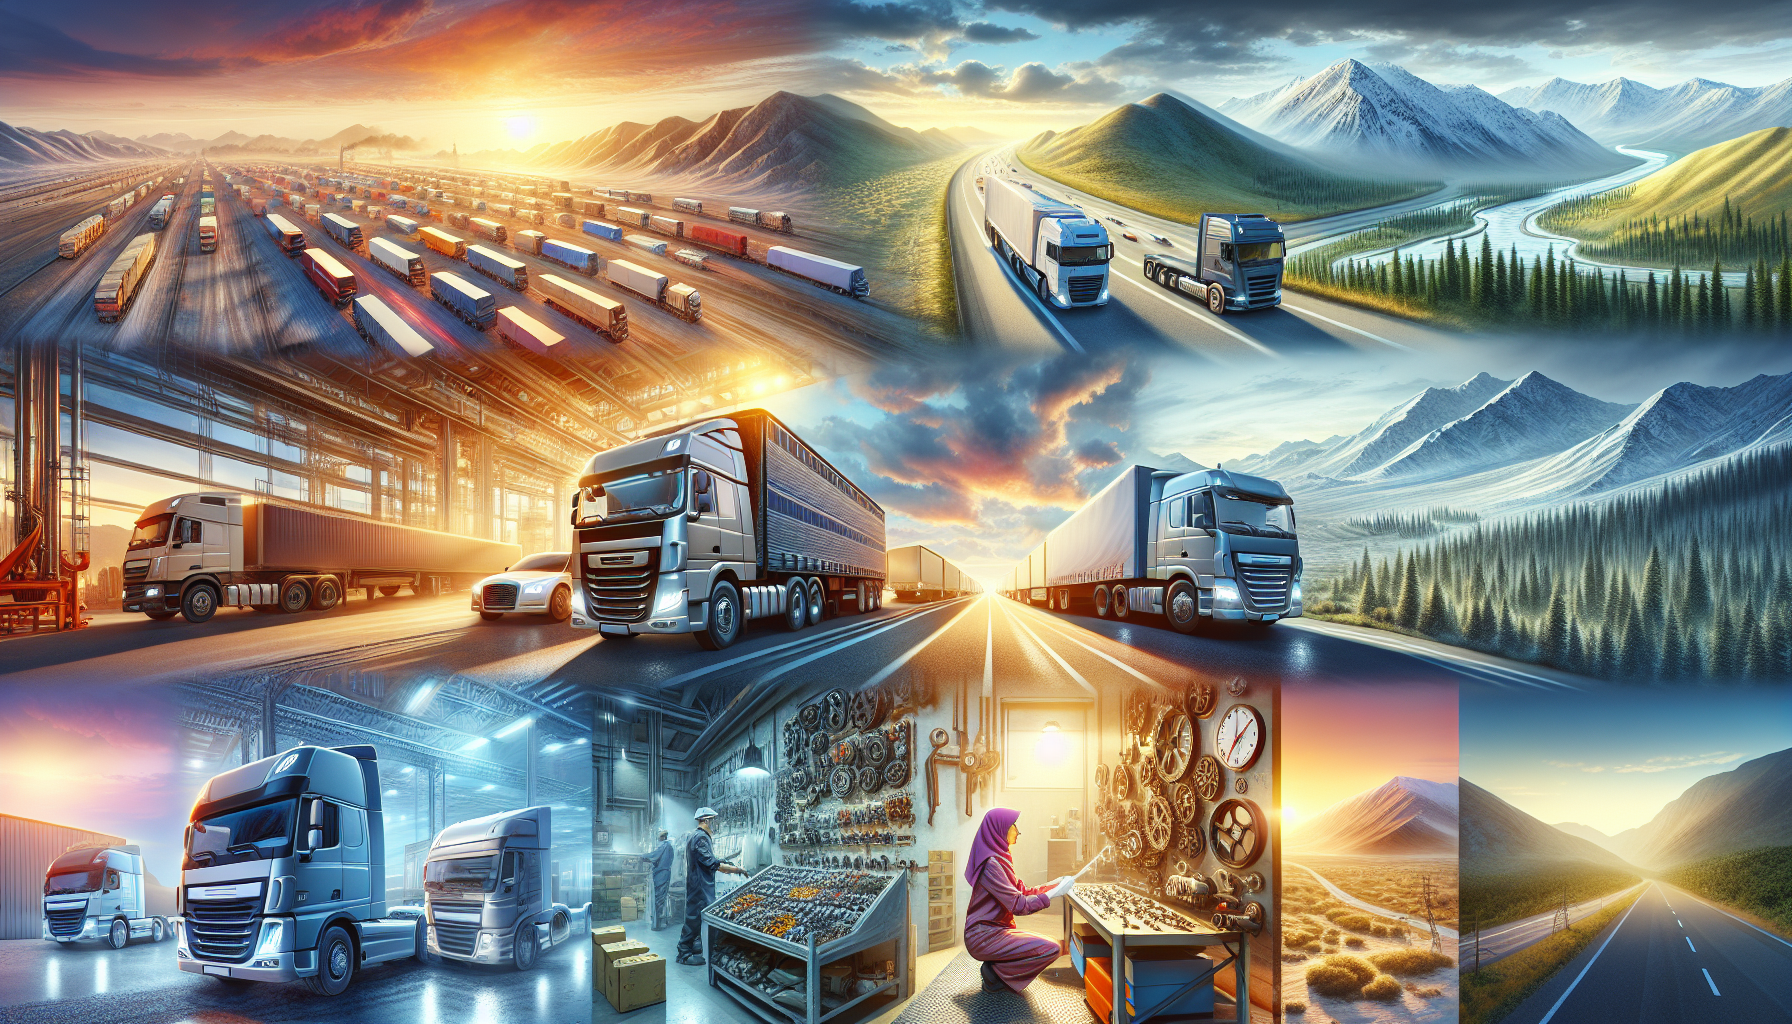 découvrez le fonctionnement d'une entreprise de transport routier et ses activités clés dans ce guide informatif. apprenez comment une telle entreprise opère pour assurer le transport efficace et sécurisé des biens et marchandises.